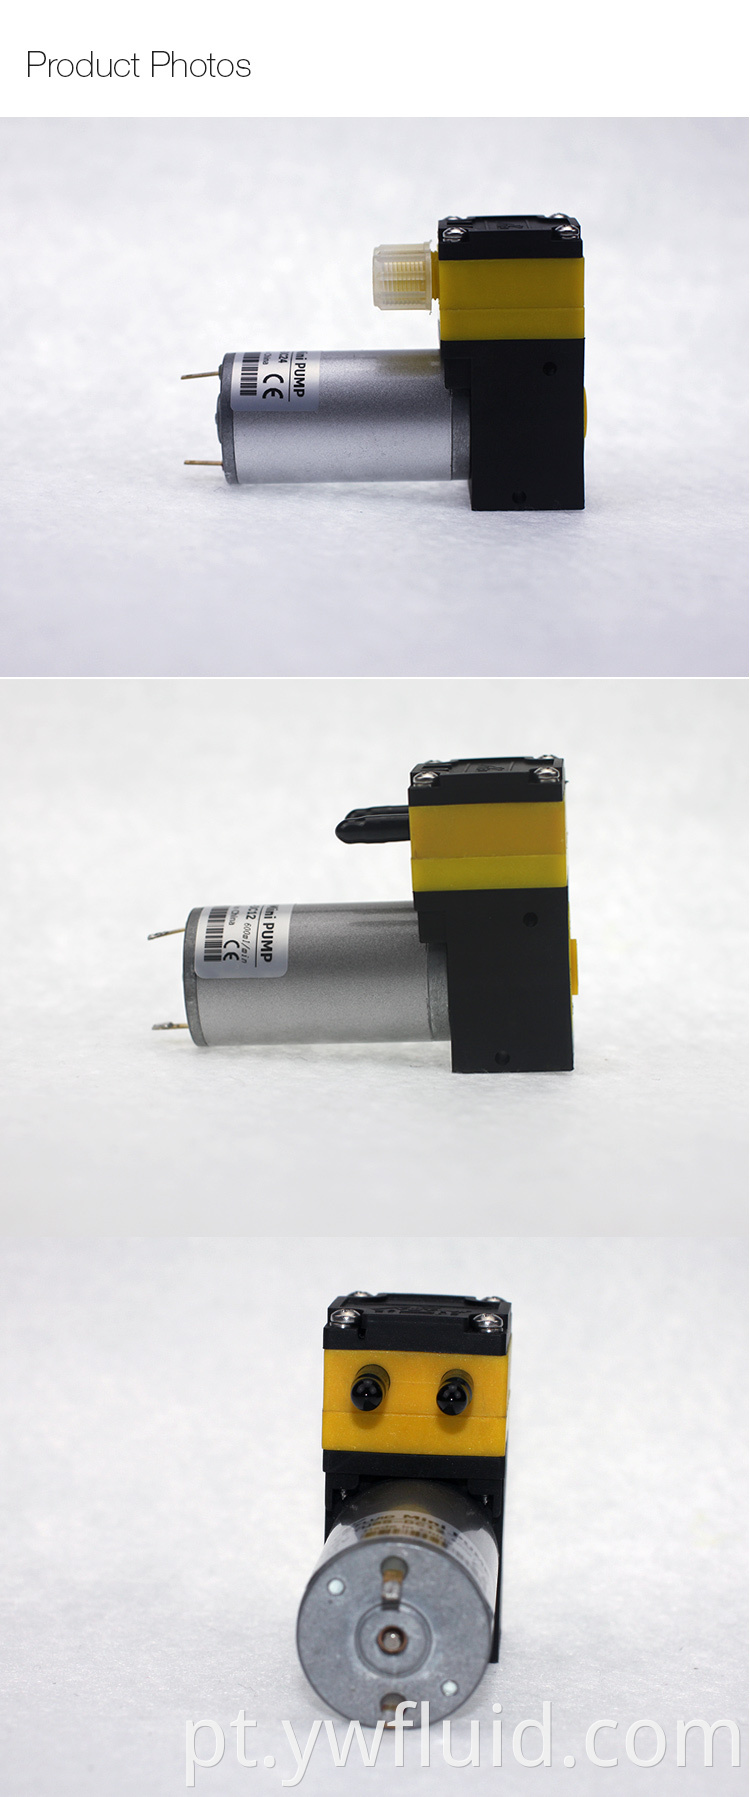 Bomba de ar resfriador de ar de 24V Ywfluid de 12V com taxa de fluxo 3L/min usada para sucção de transferência de gás ou geração de vácuo